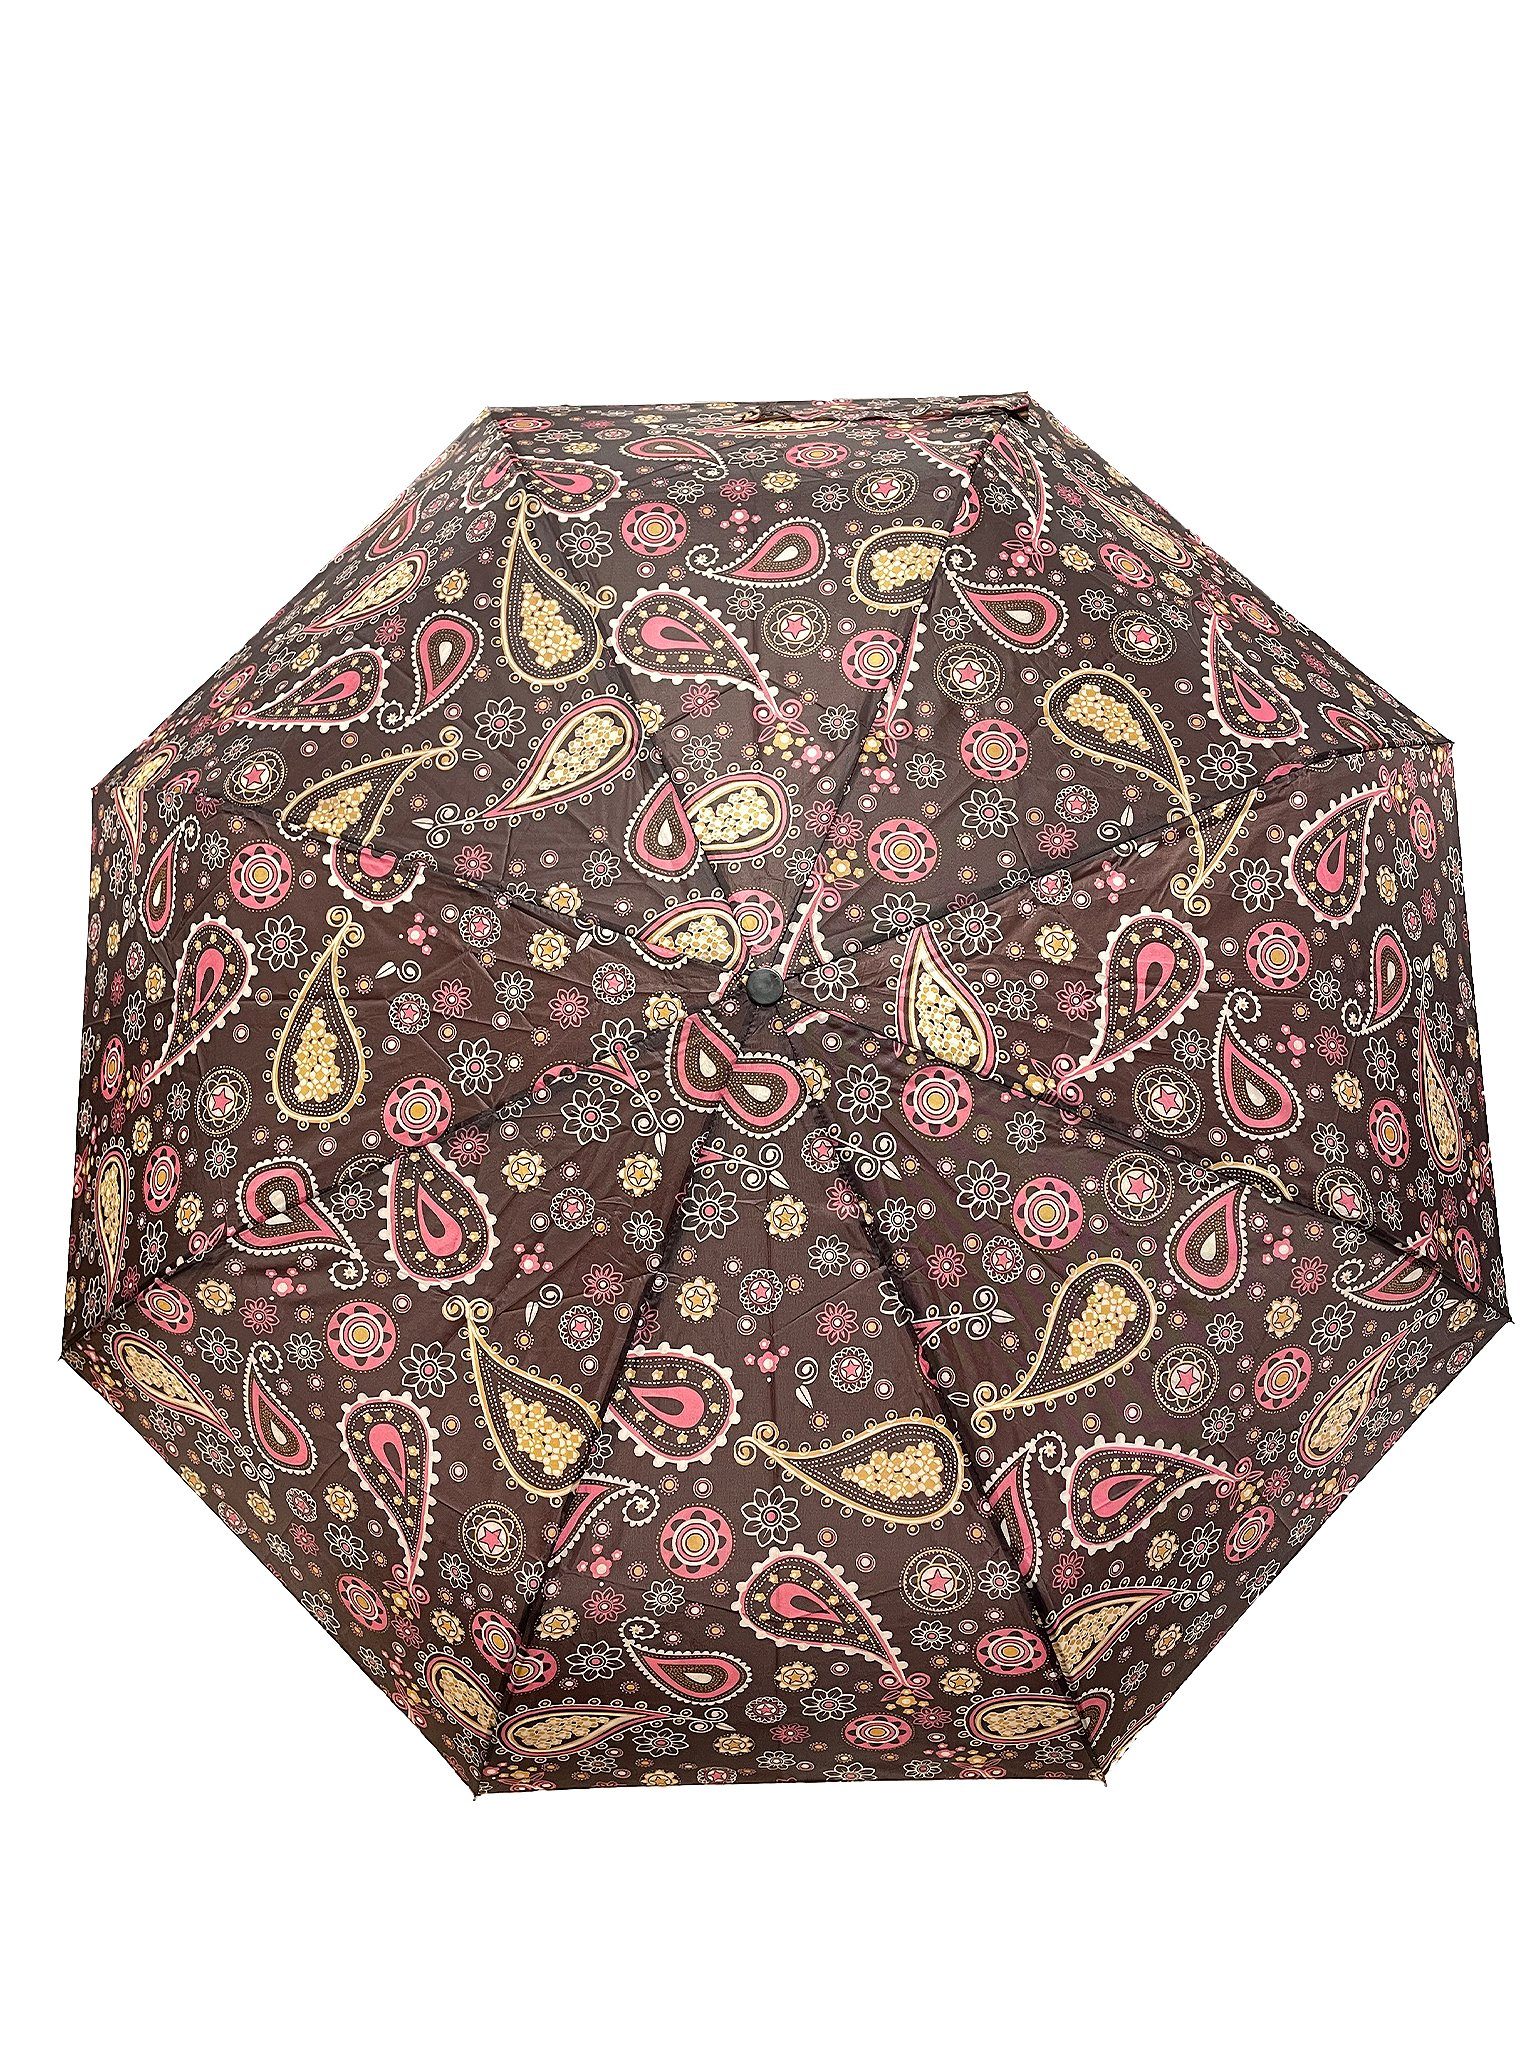 Regenschirm Paris Taschenregenschirm Braun Gemustert in 6746 Taschenschirm, Kleiner ANELY